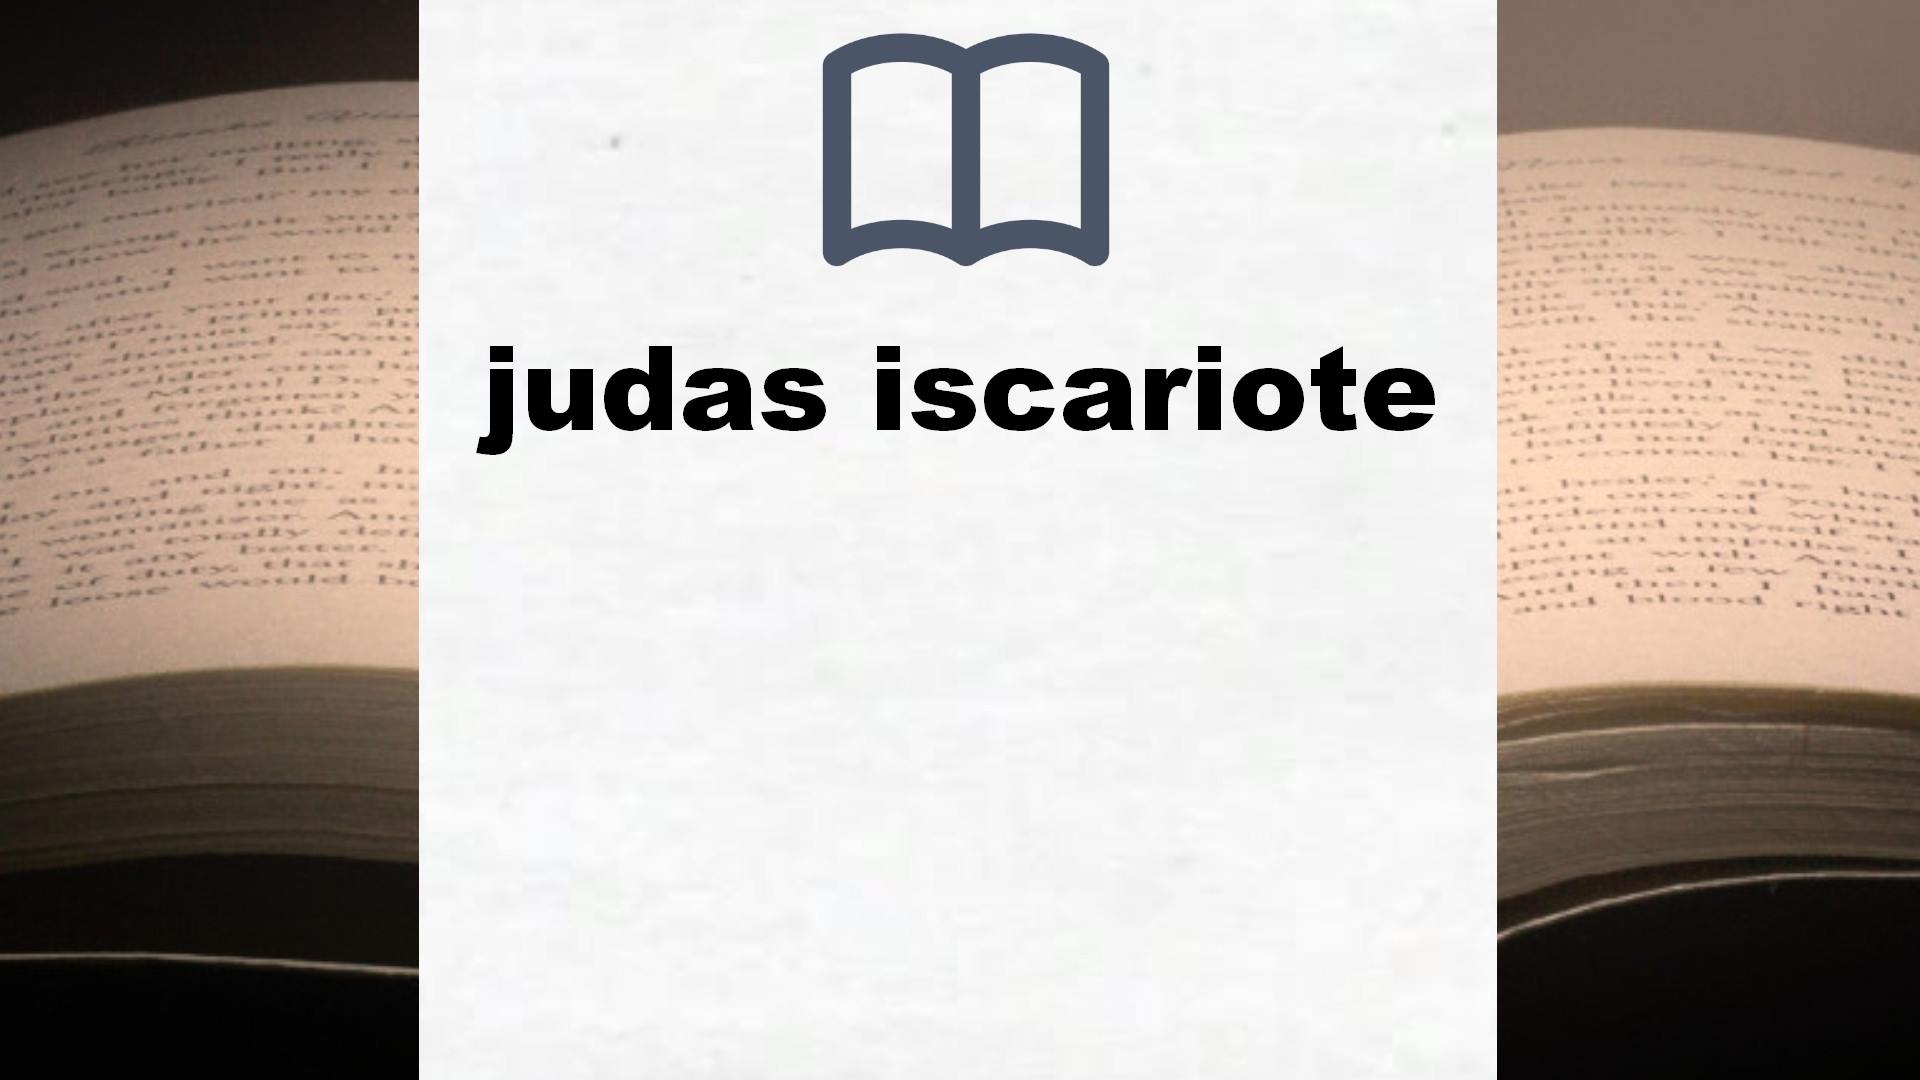 Libros sobre judas iscariote